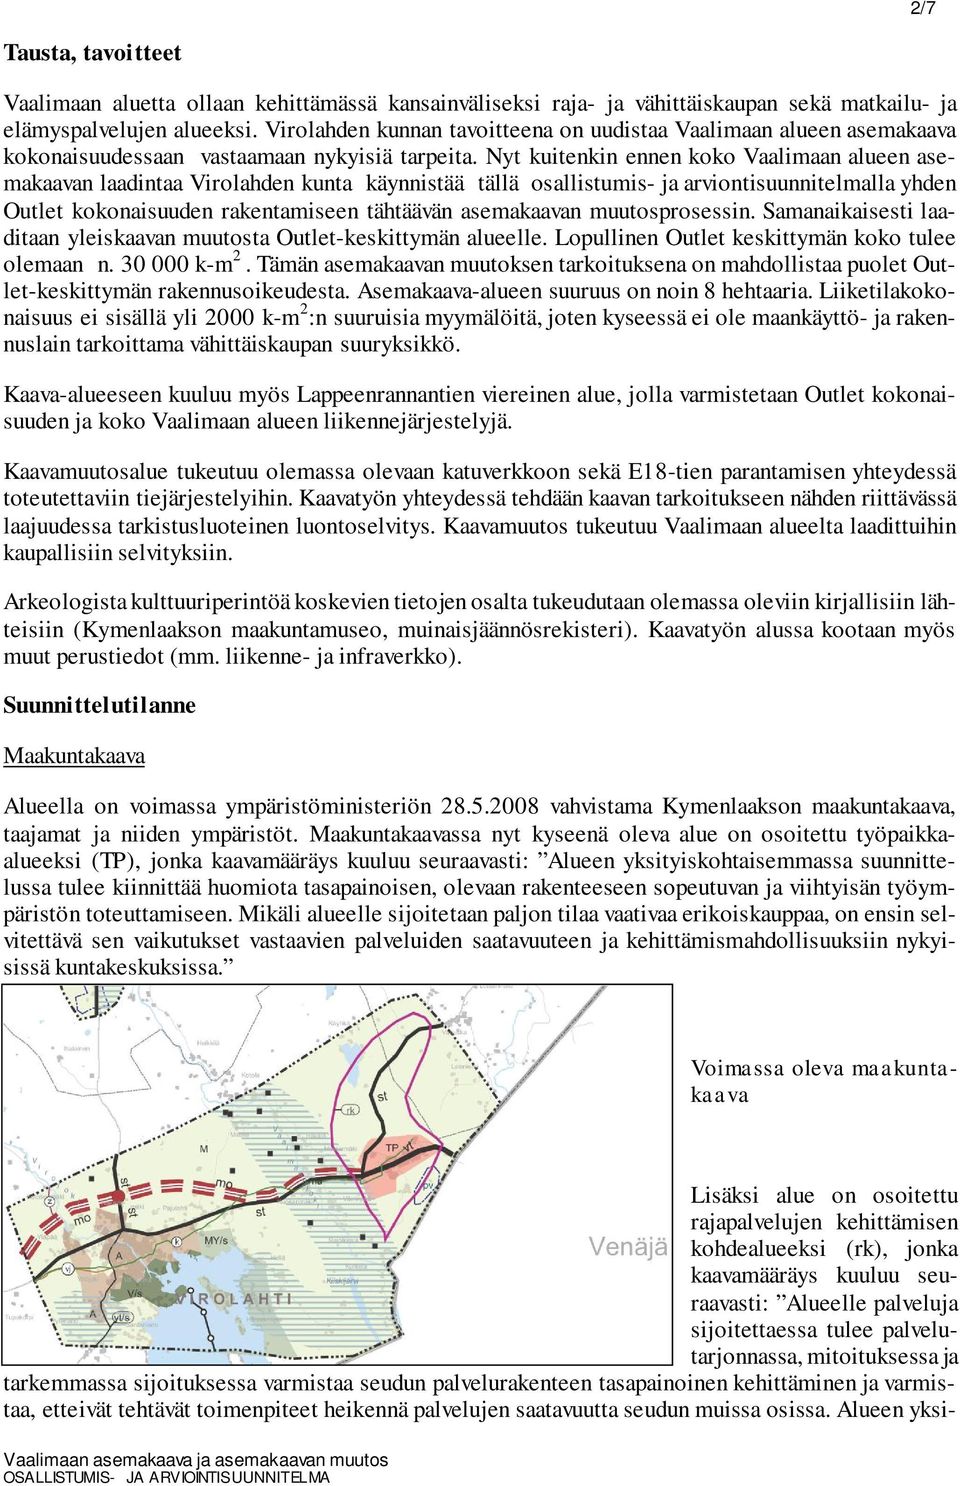 Nyt kuitenkin ennen koko Vaalimaan alueen asemakaavan laadintaa Virolahden kunta käynnistää tällä osallistumis- ja arviontisuunnitelmalla yhden Outlet kokonaisuuden rakentamiseen tähtäävän